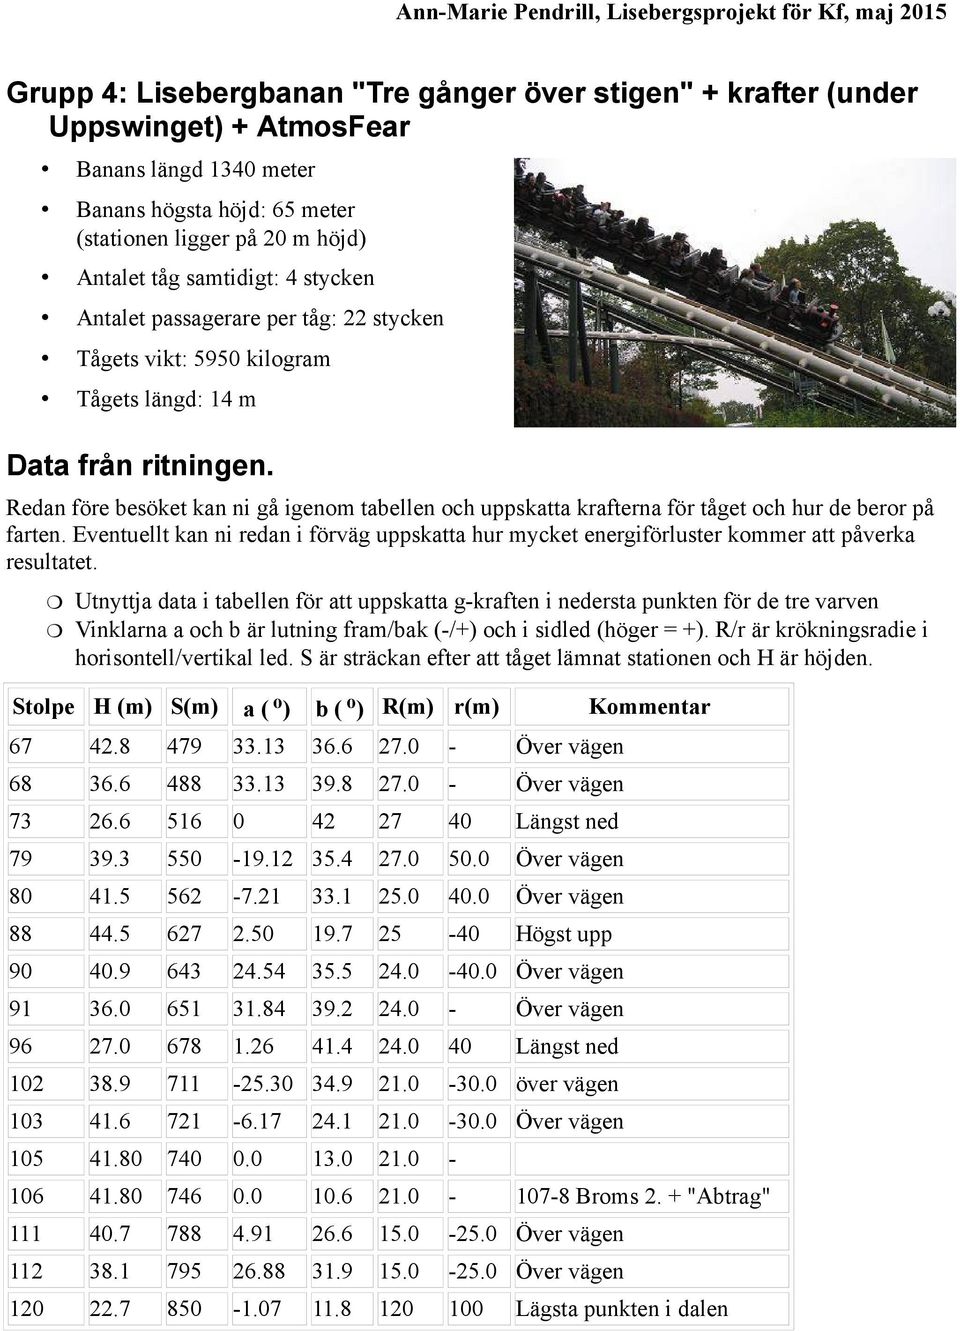 Redan före besöket kan ni gå igenom tabellen och uppskatta krafterna för tåget och hur de beror på farten.